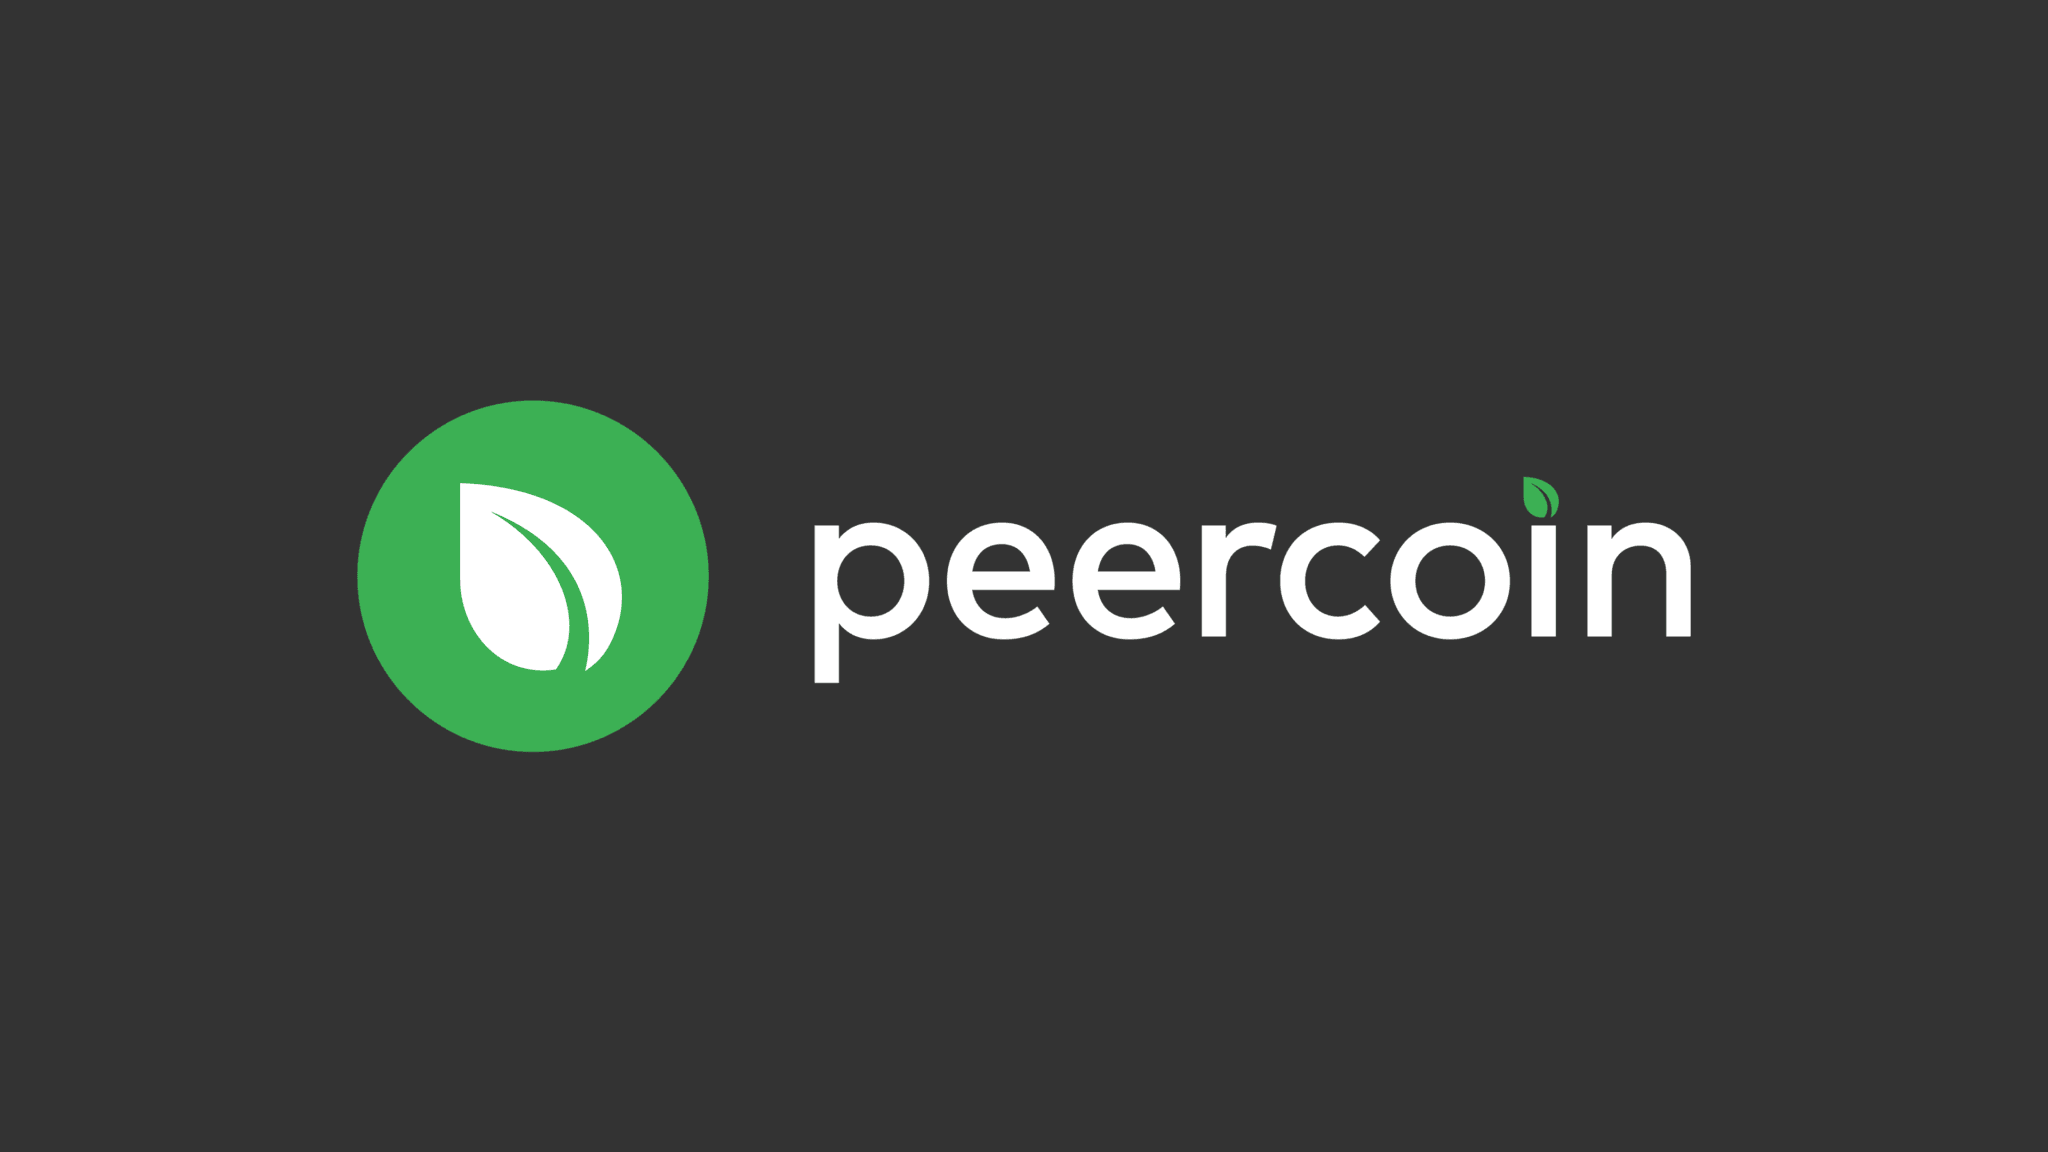 definisi dan penjelasan tentang peercoin